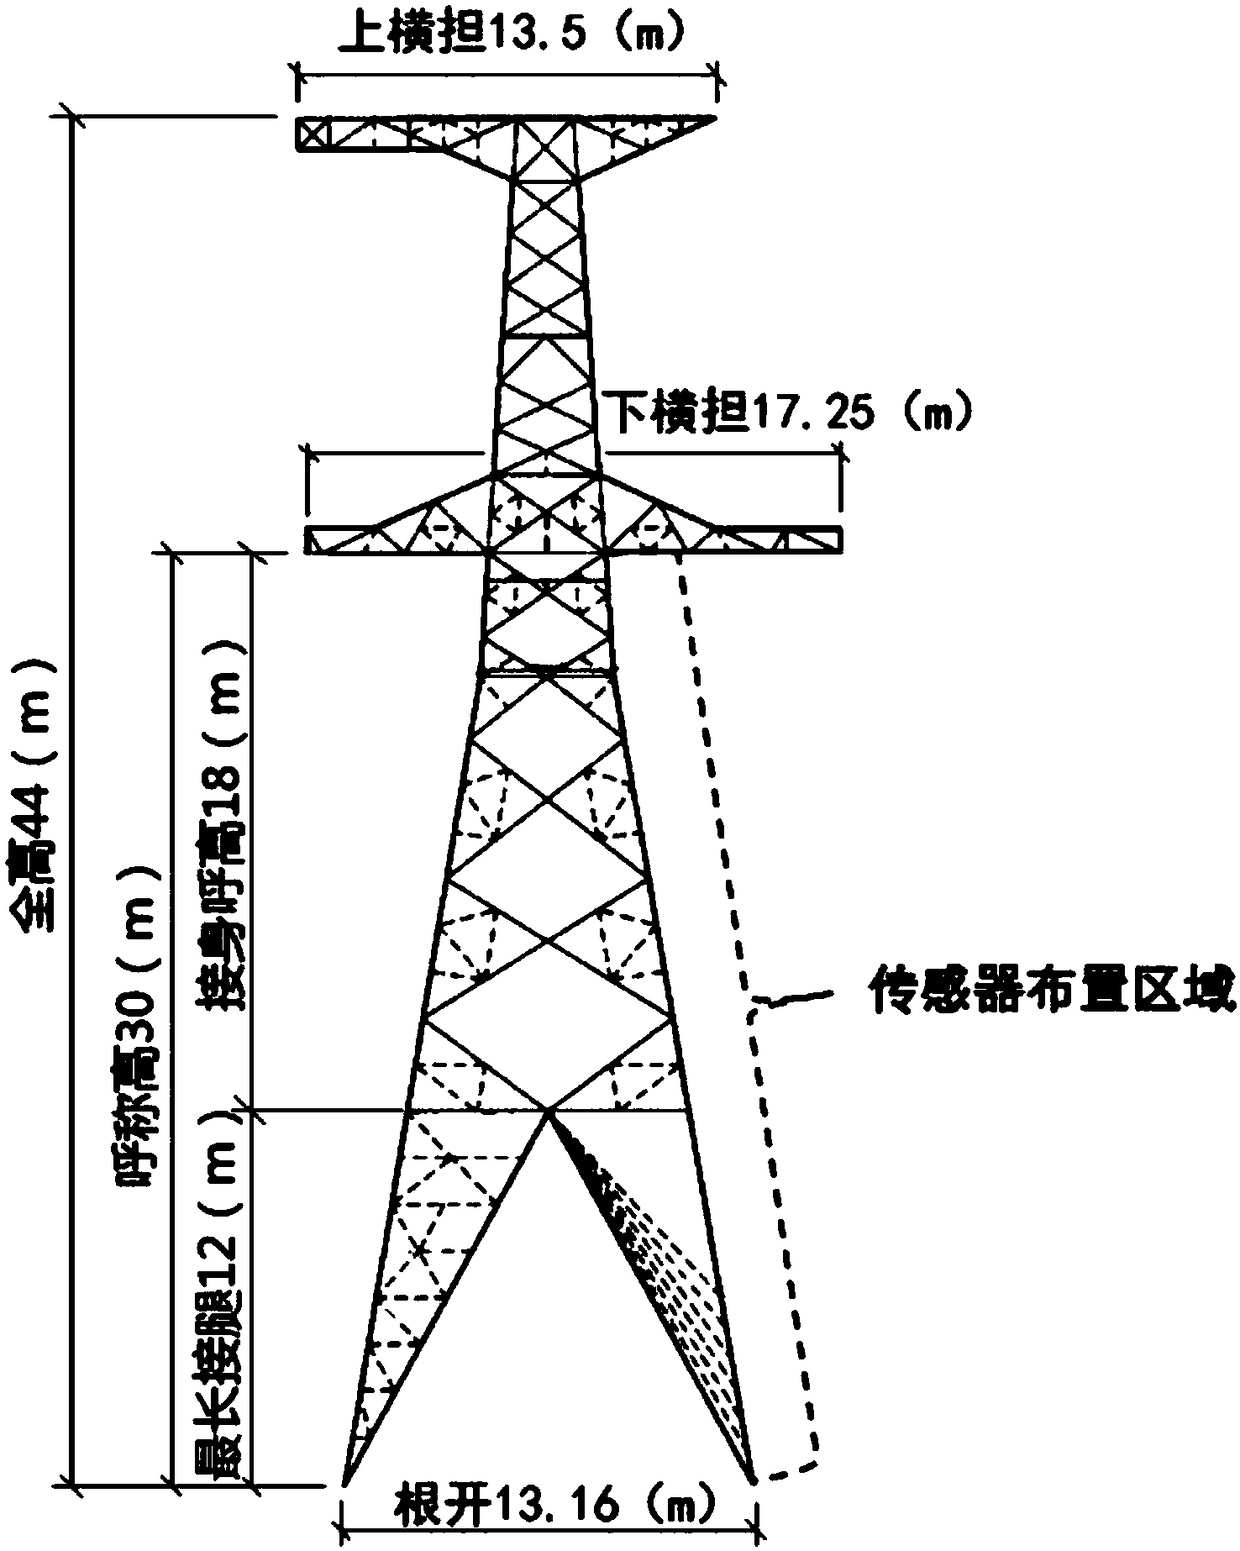 Transmission tower damage recognition method